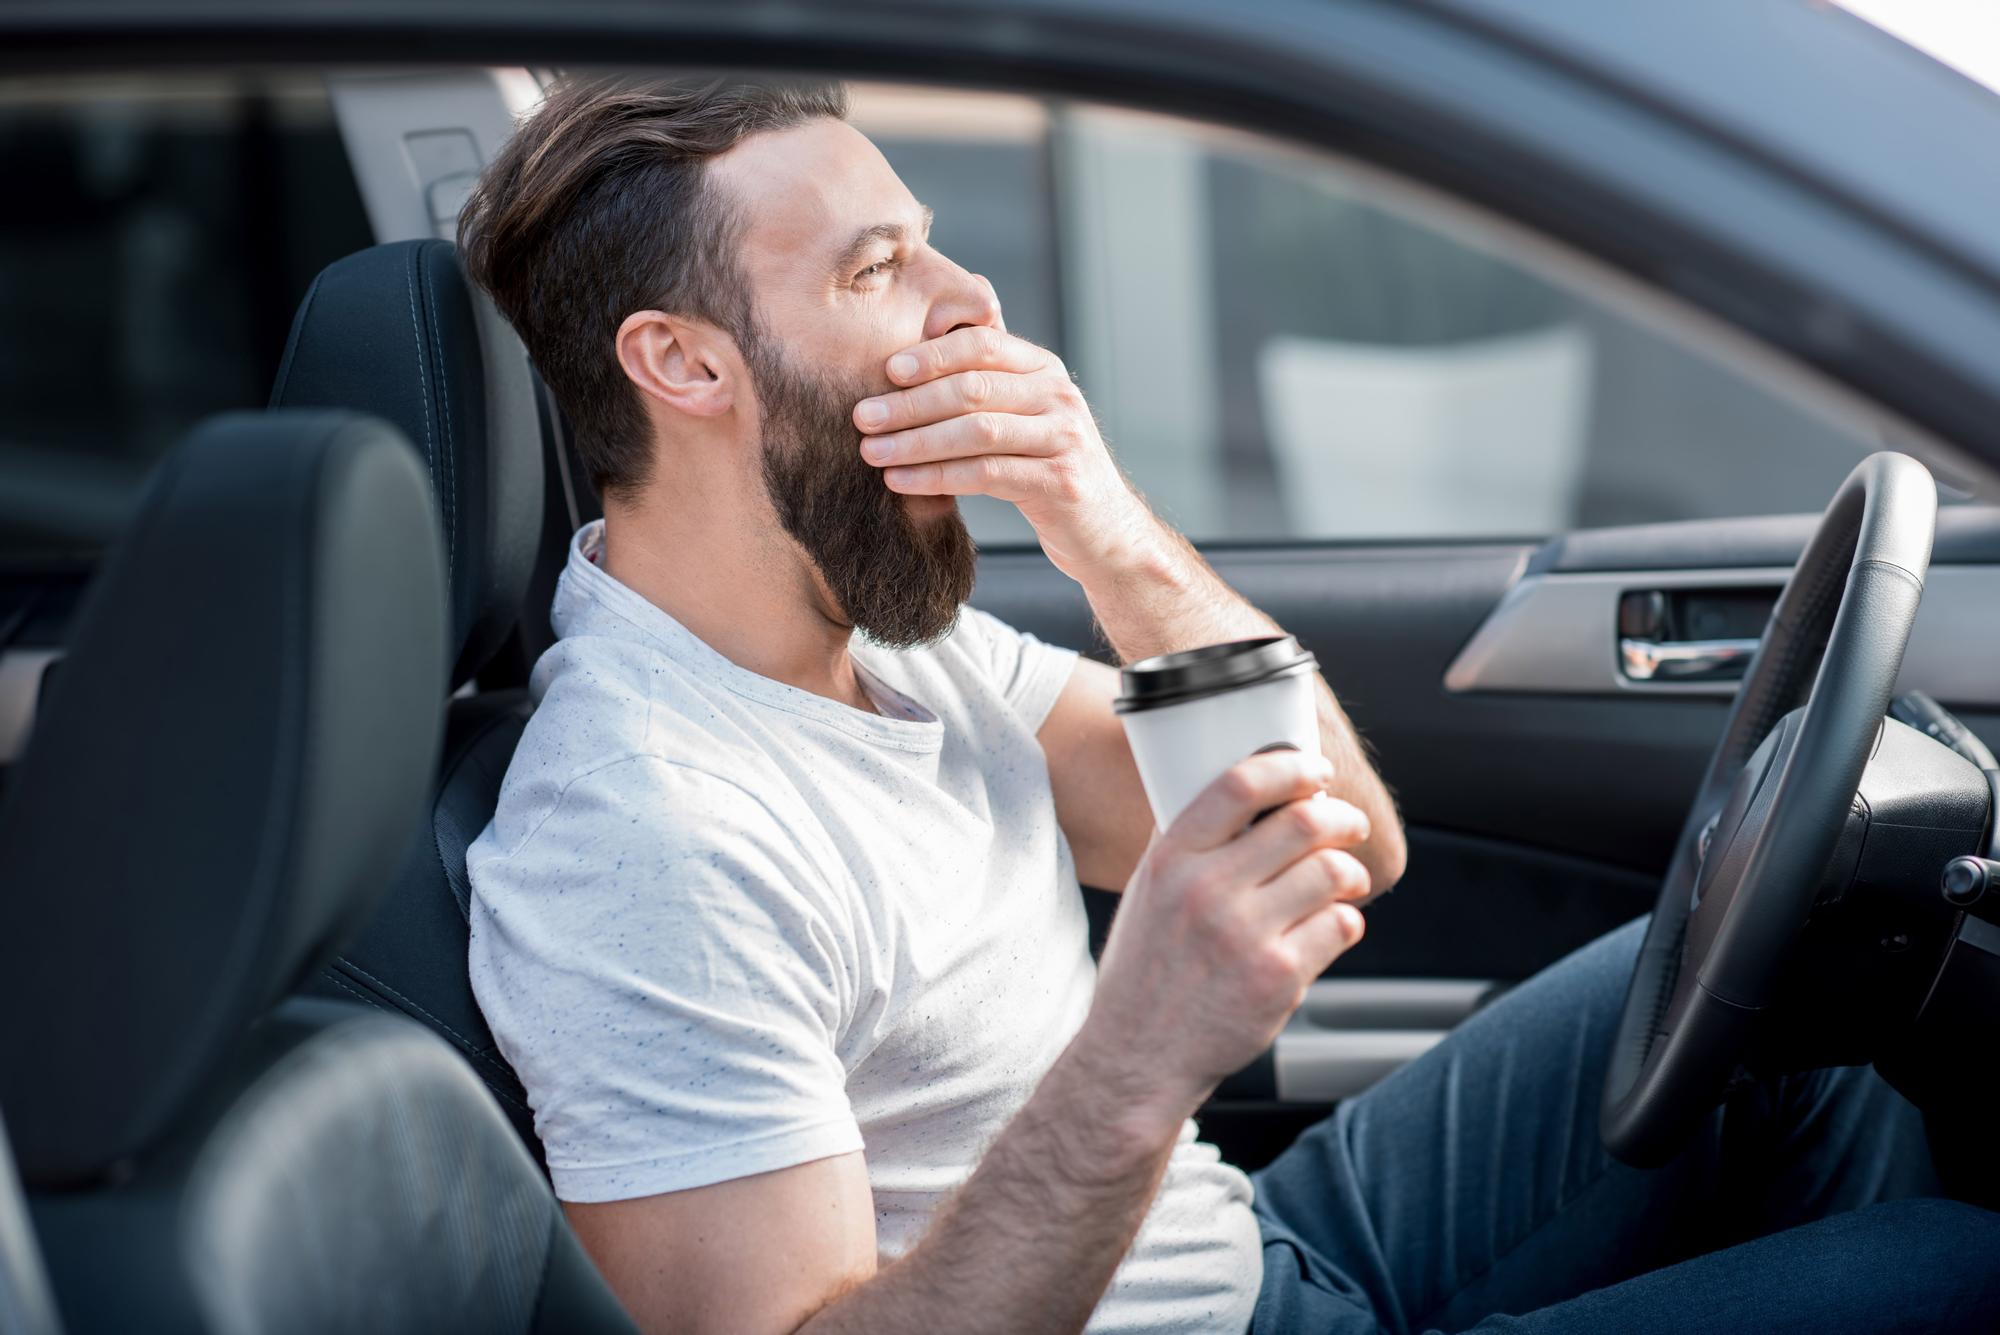 Se puede dormir en el coche?: cómo evitar multas con estos consejos